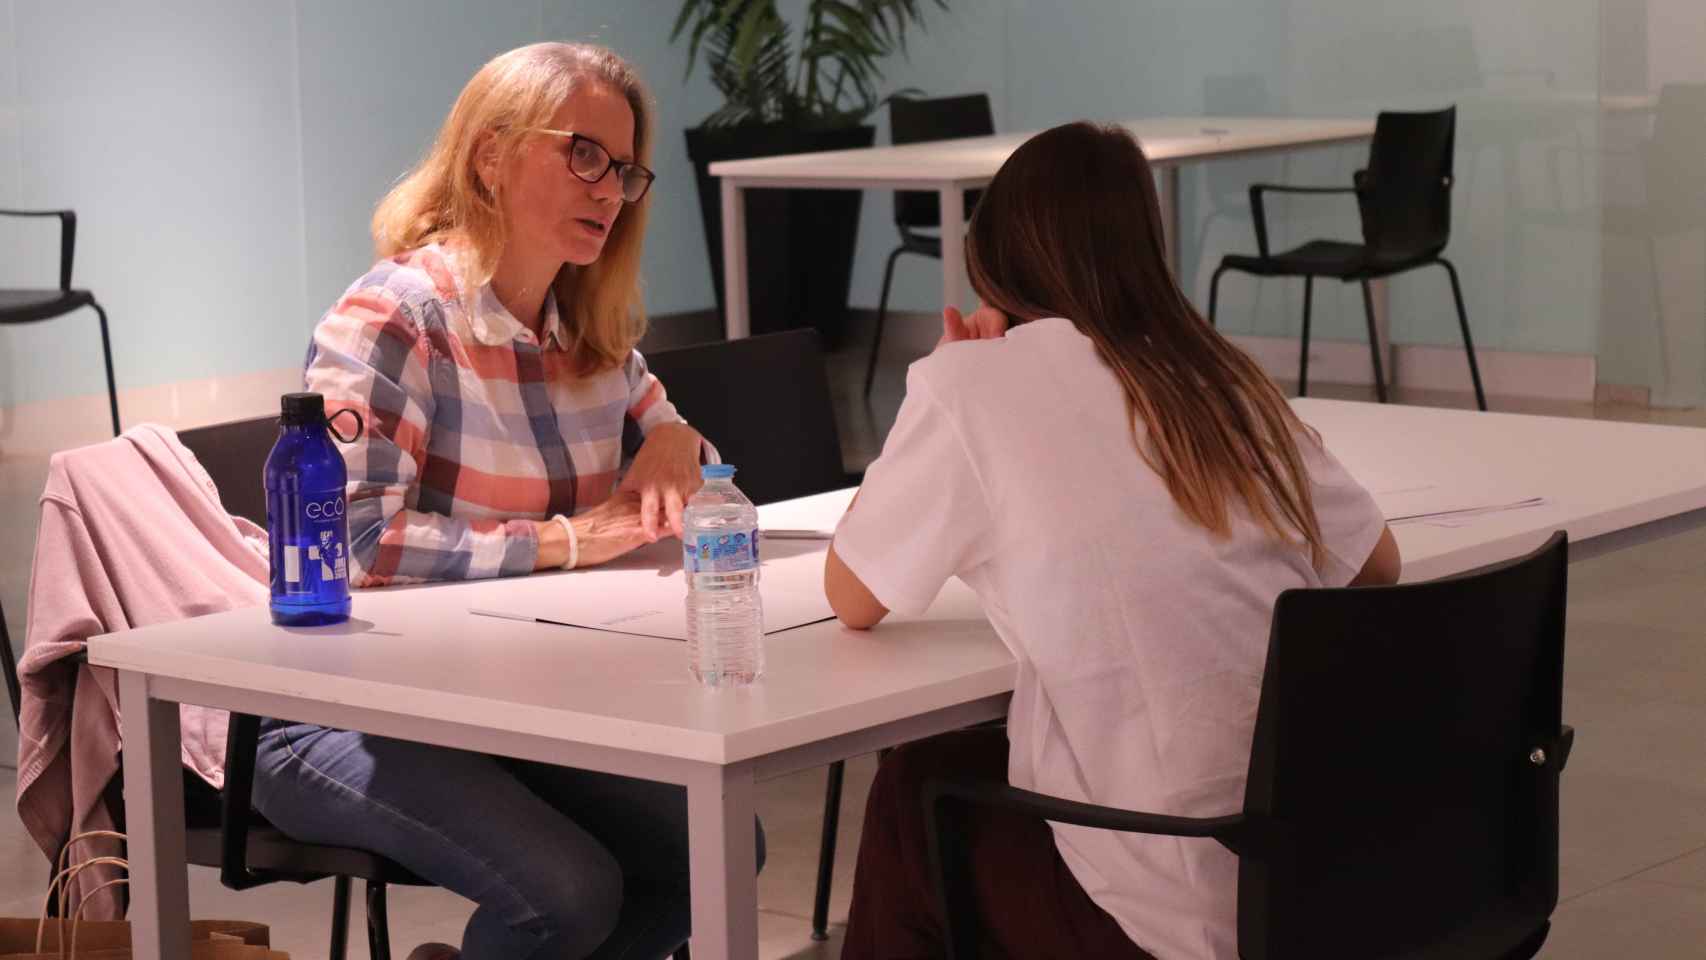 En la mentoría, las voluntarias dan consejos sobre cómo mejorar el currículum y enfrentar la entrevista con éxito.